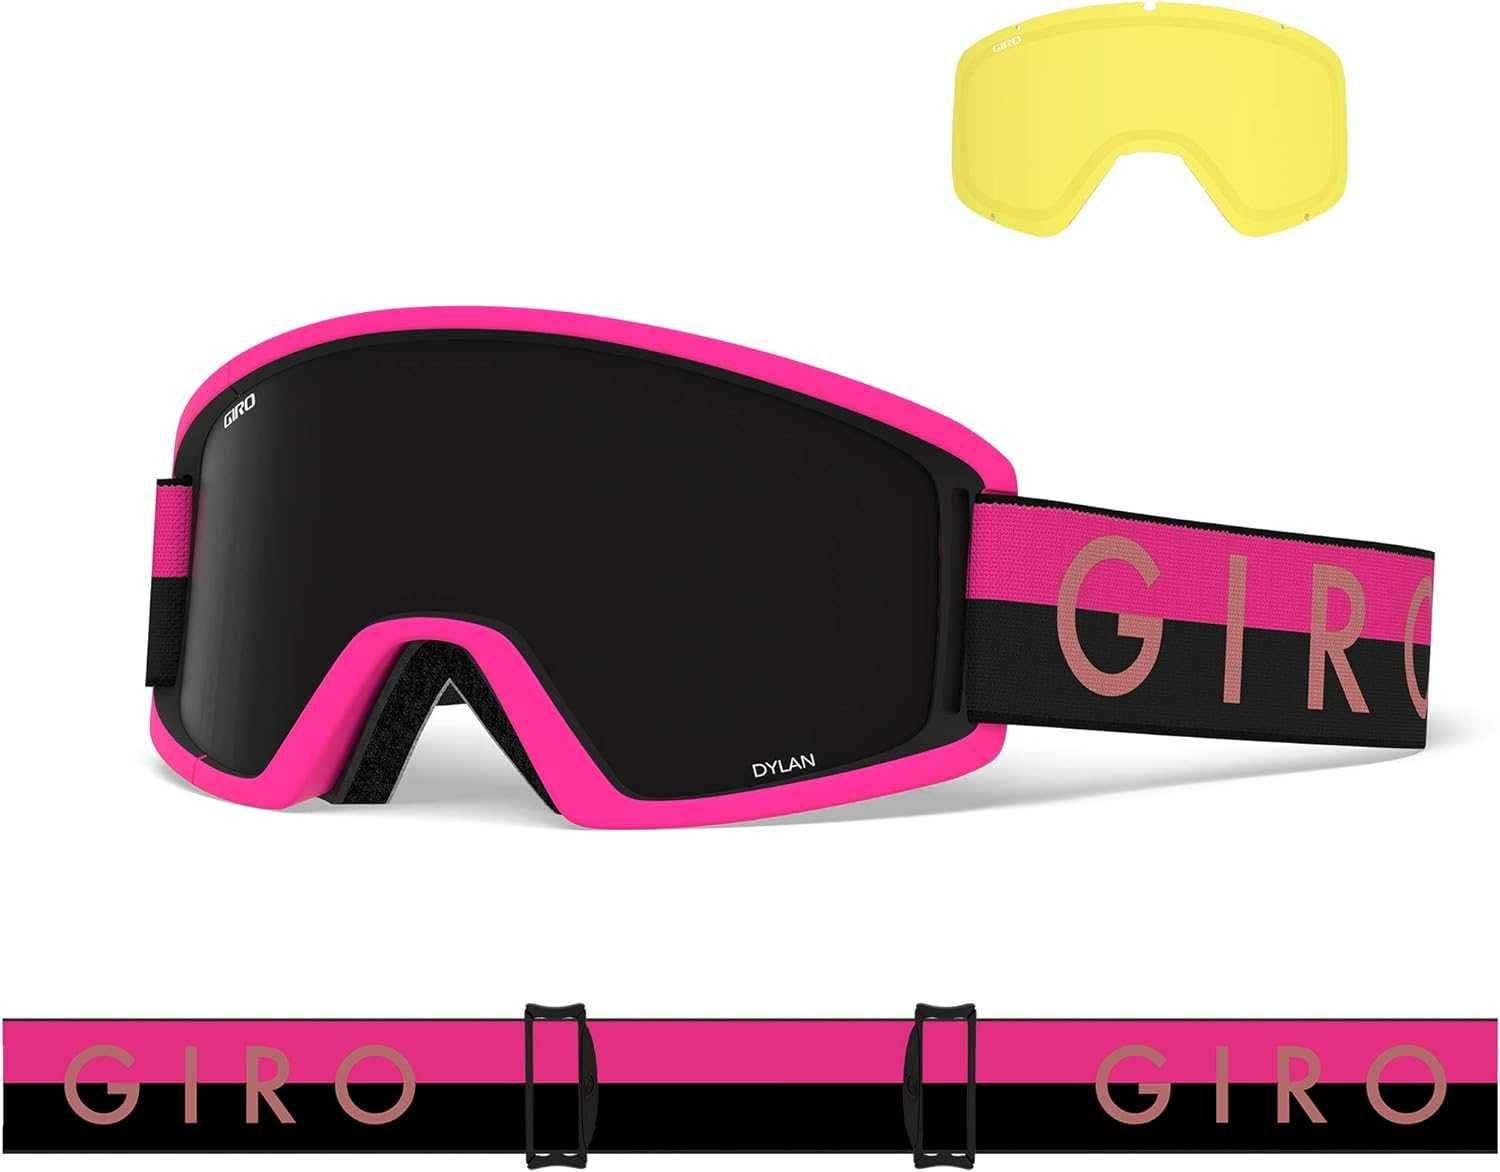 Gogle Giro Dylan Black/pink throwback narciarskie snowboard